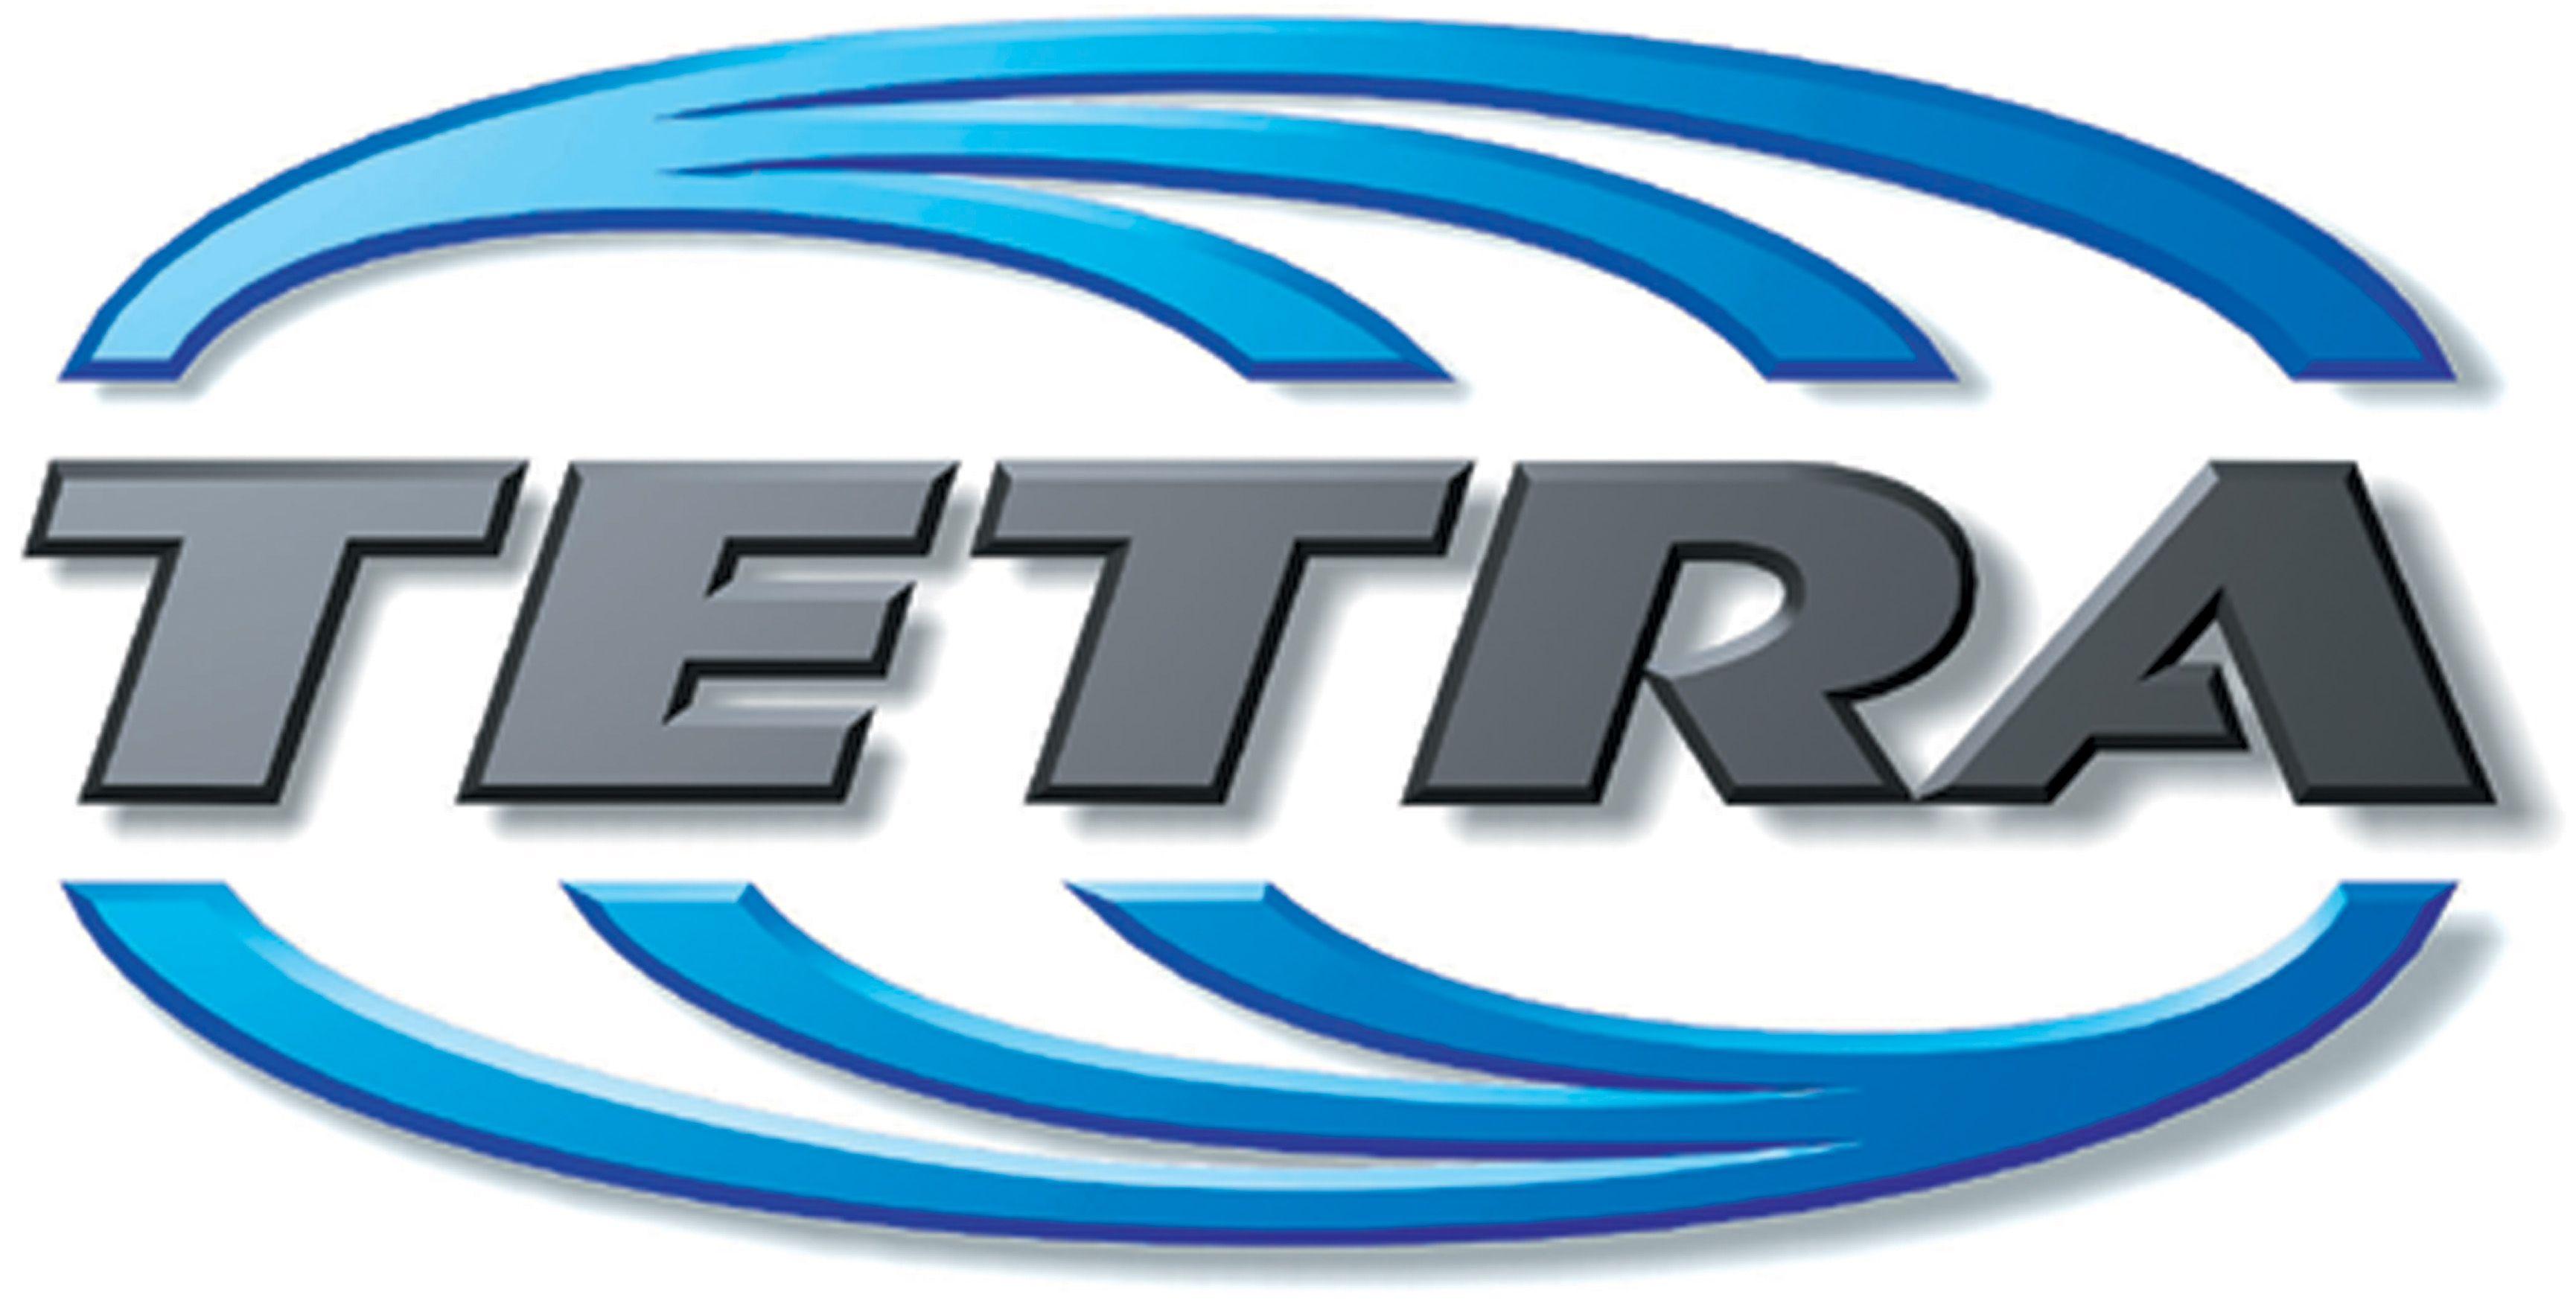 Tetra Logo - TETRA - ConnecTel, Inc.